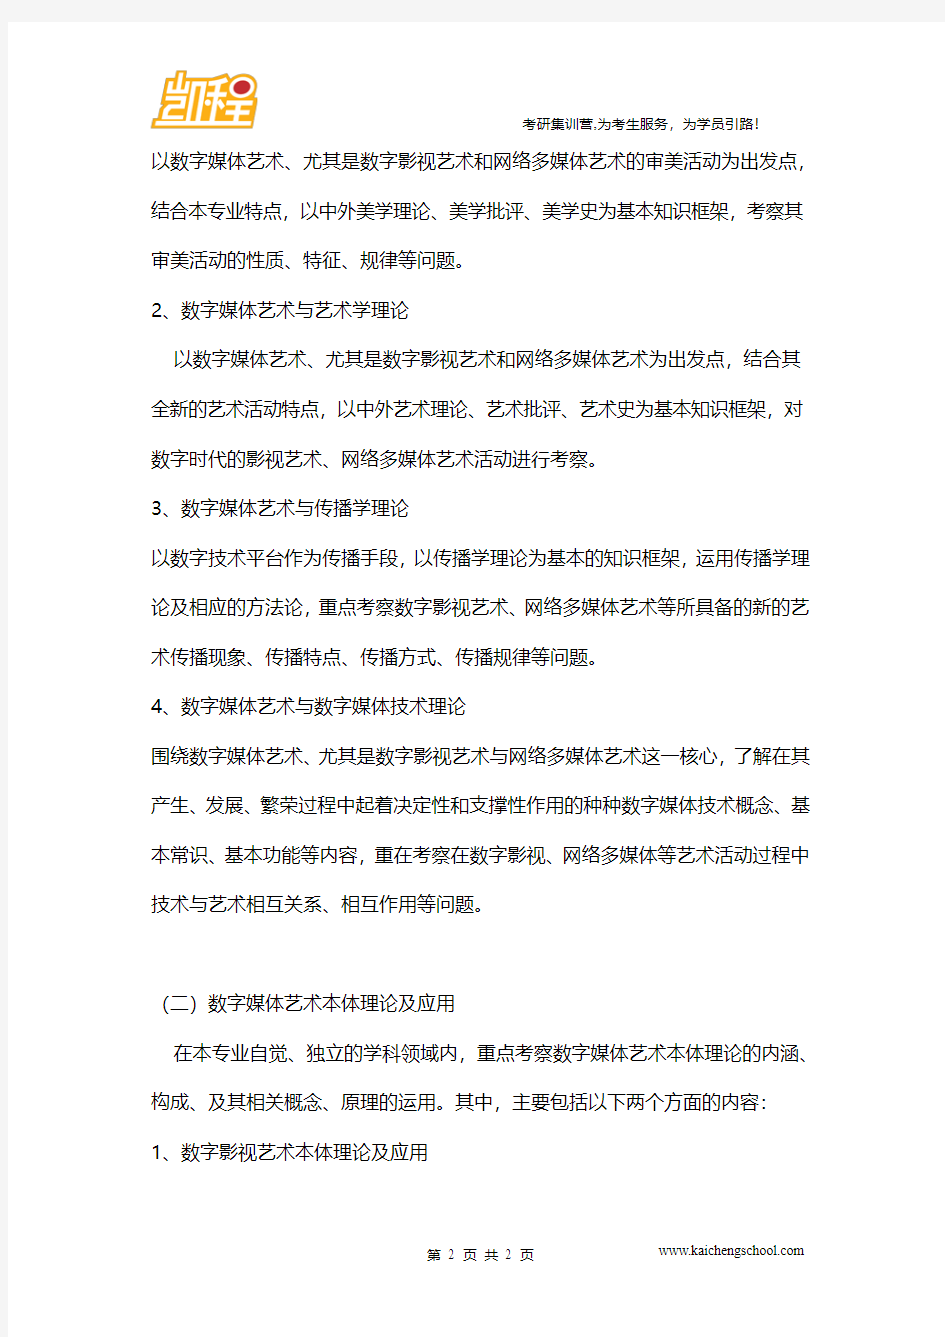 中国传媒大学721《数字媒体艺术理论基础》考试大纲